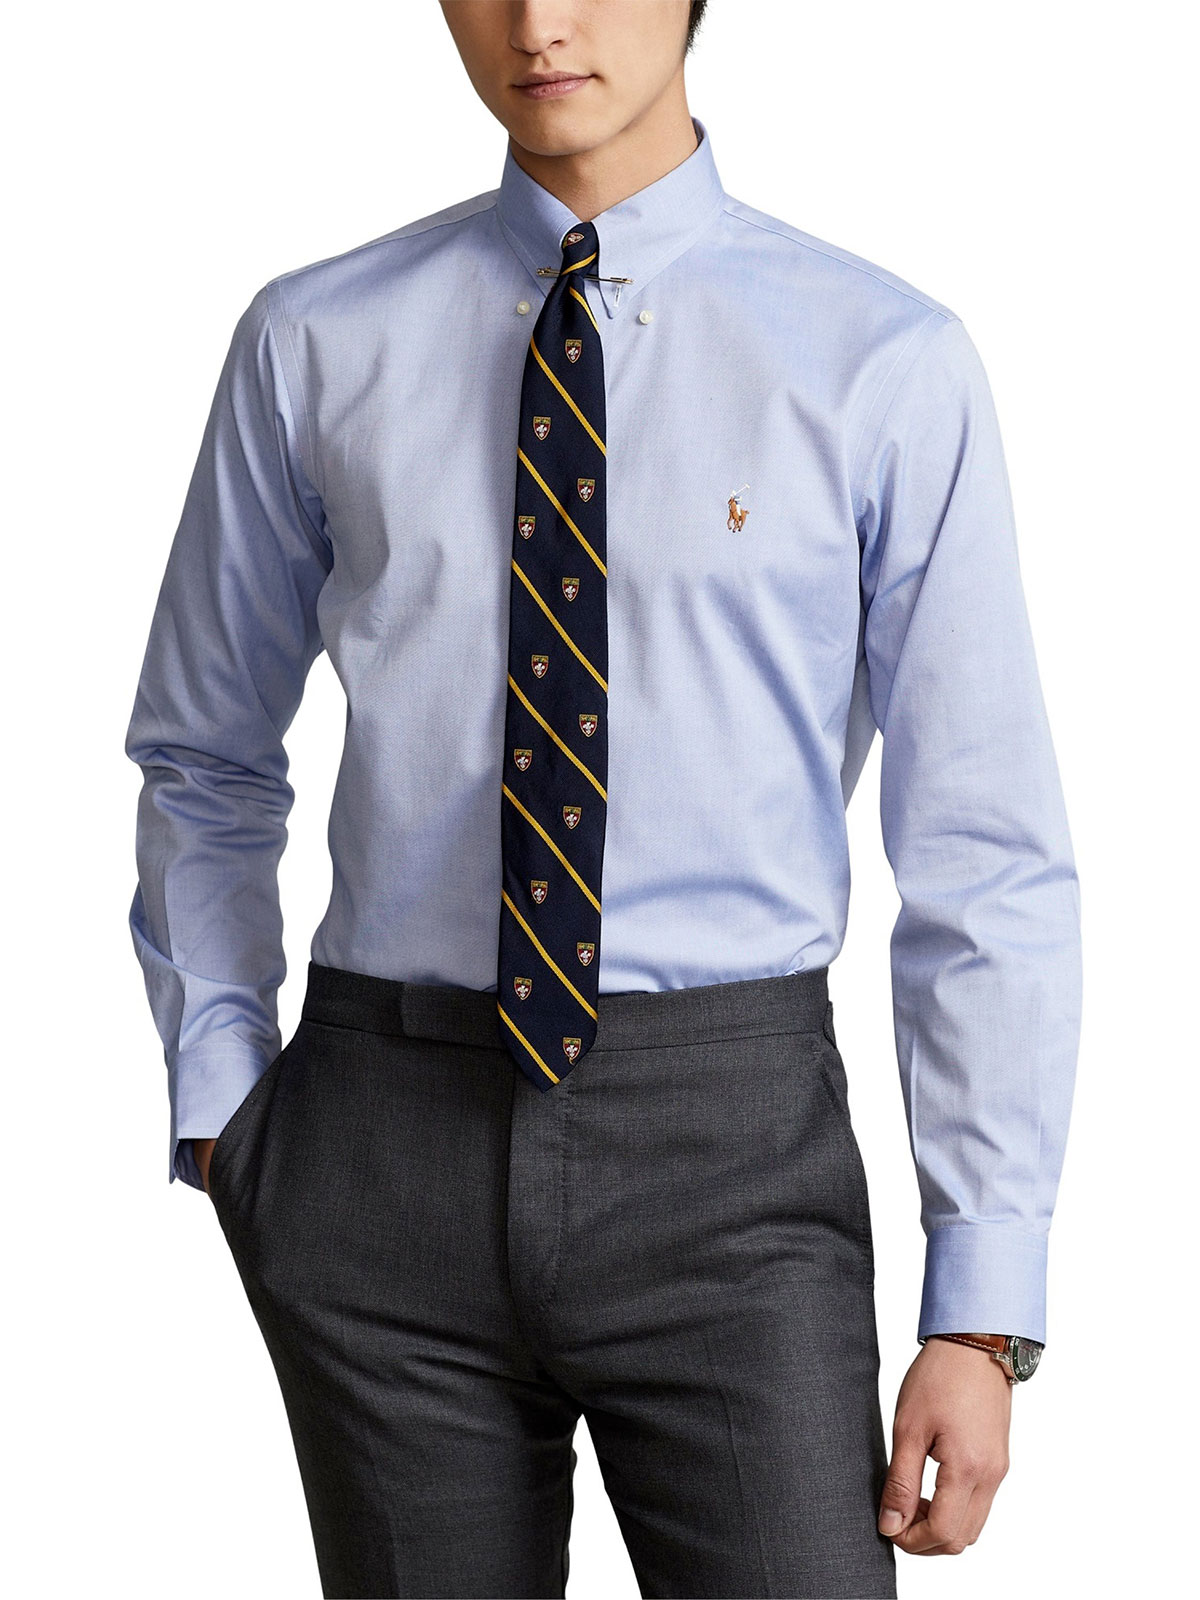 POLO RALPH LAUREN Men's Custom Fit Oxford Shirt Blue White | 712675619004 |  Botta & B Online Store